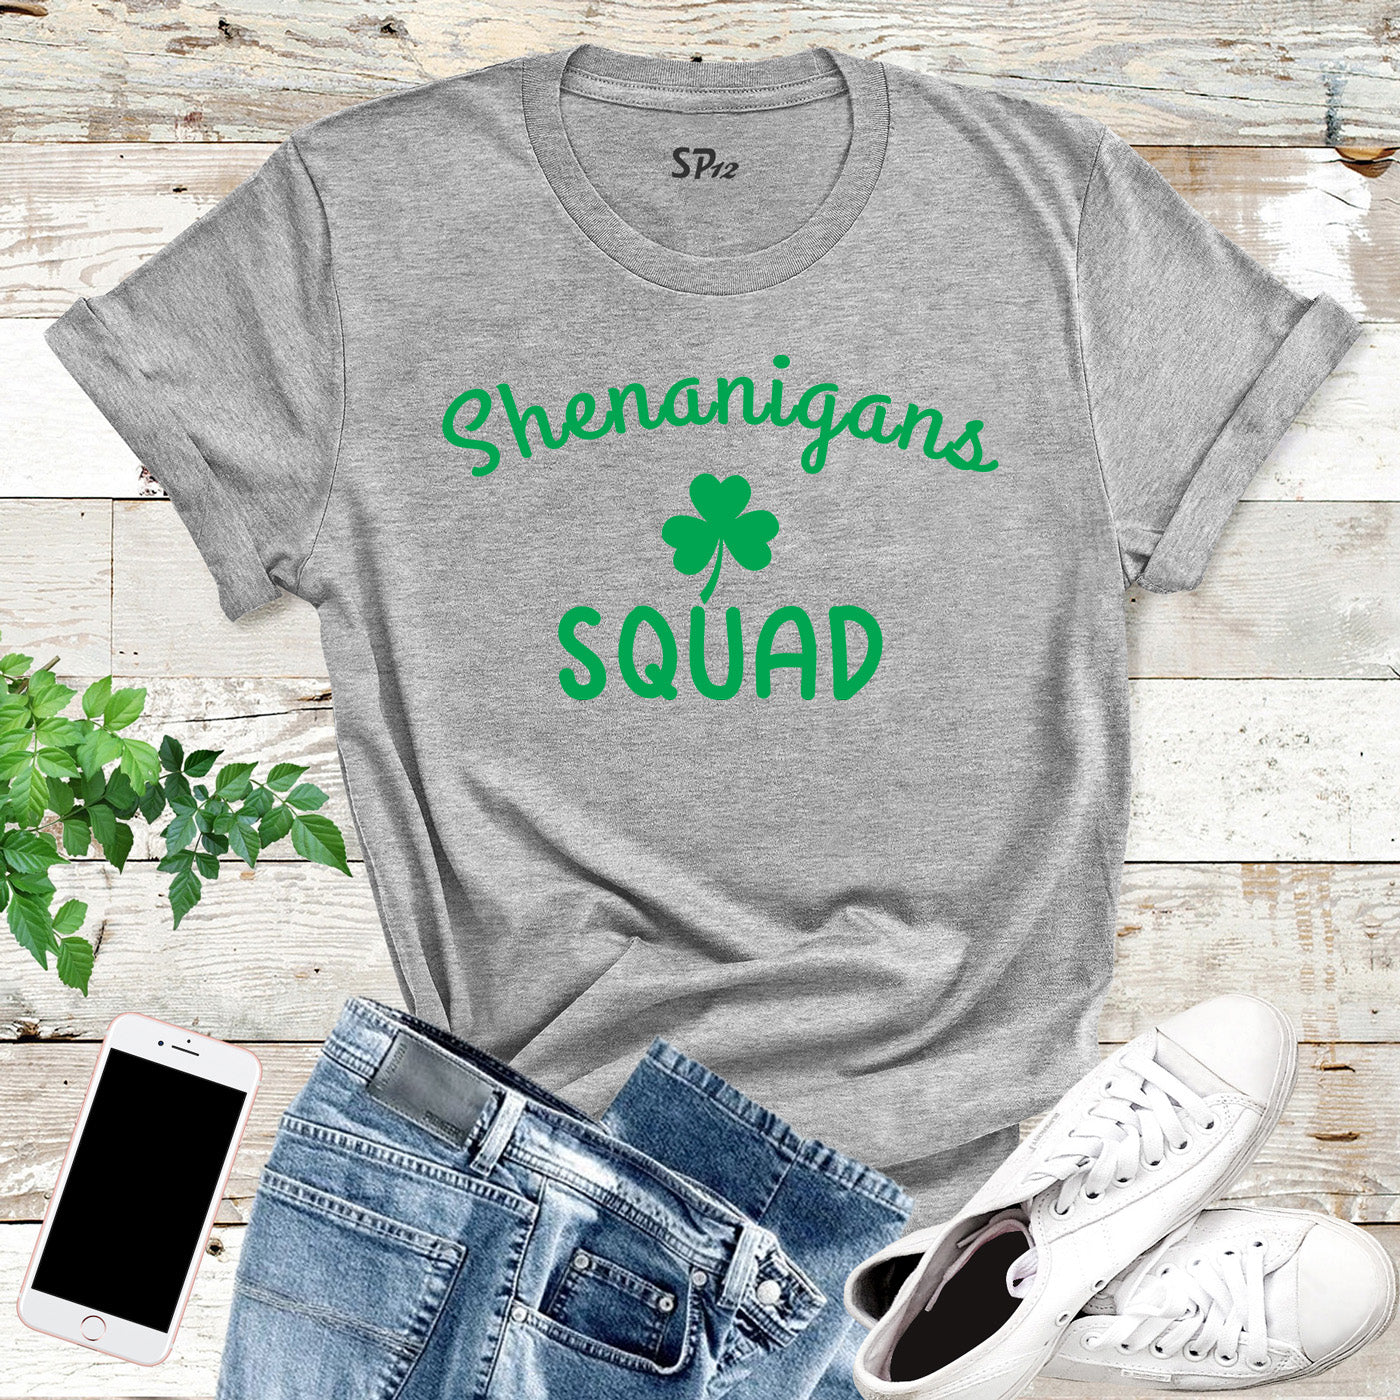 Shenanigans Squad St Patricks Day T Shirt